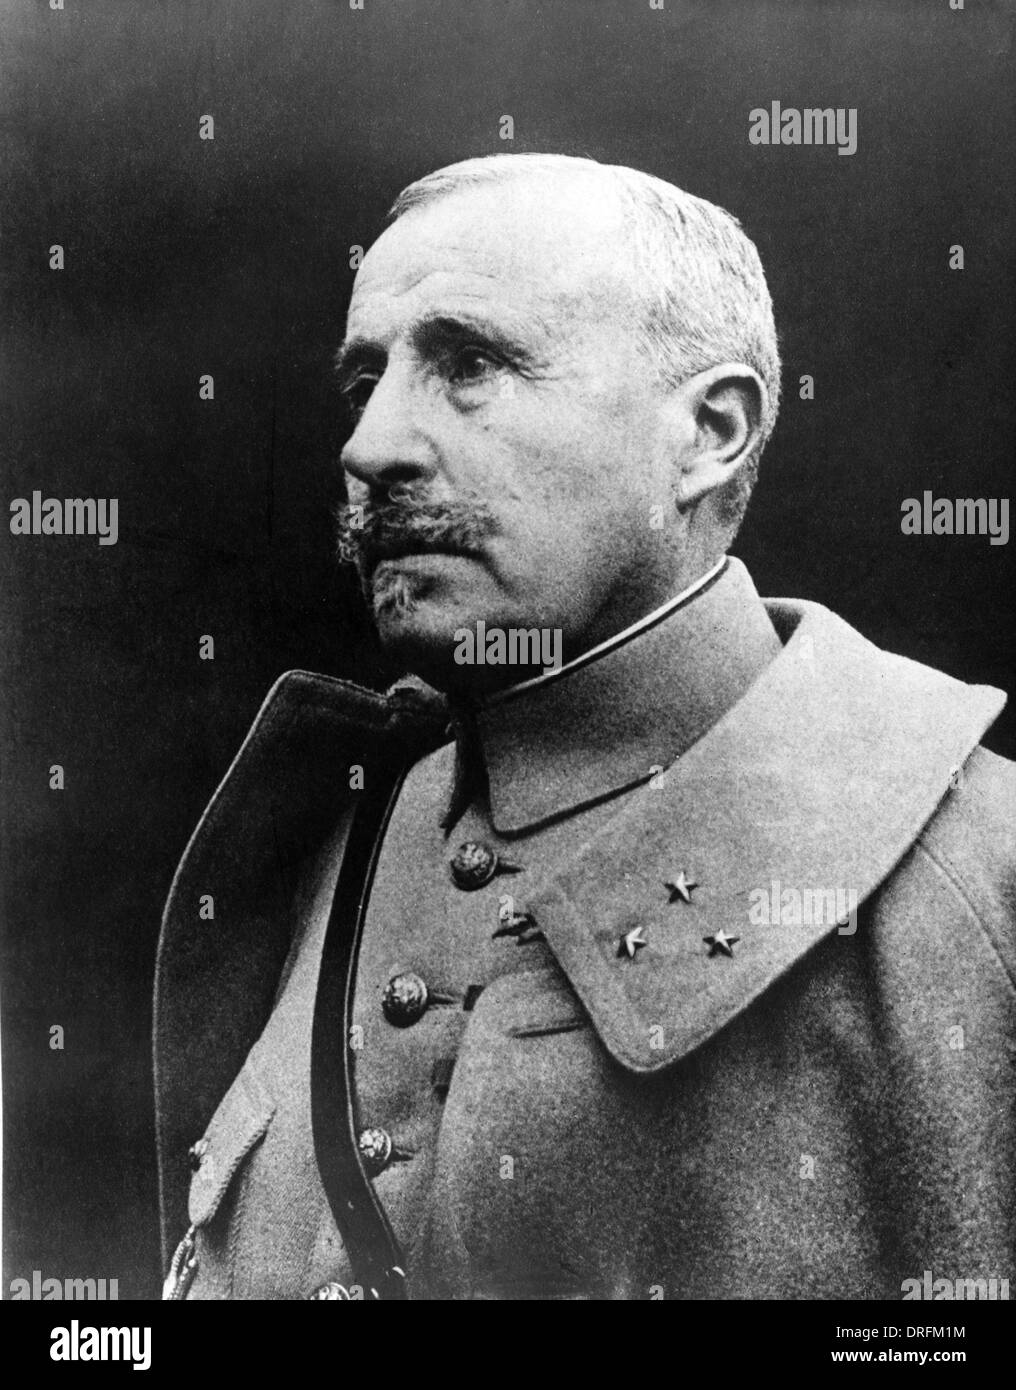 Général Robert Nivelle, officier de l'armée française, WW1 Banque D'Images